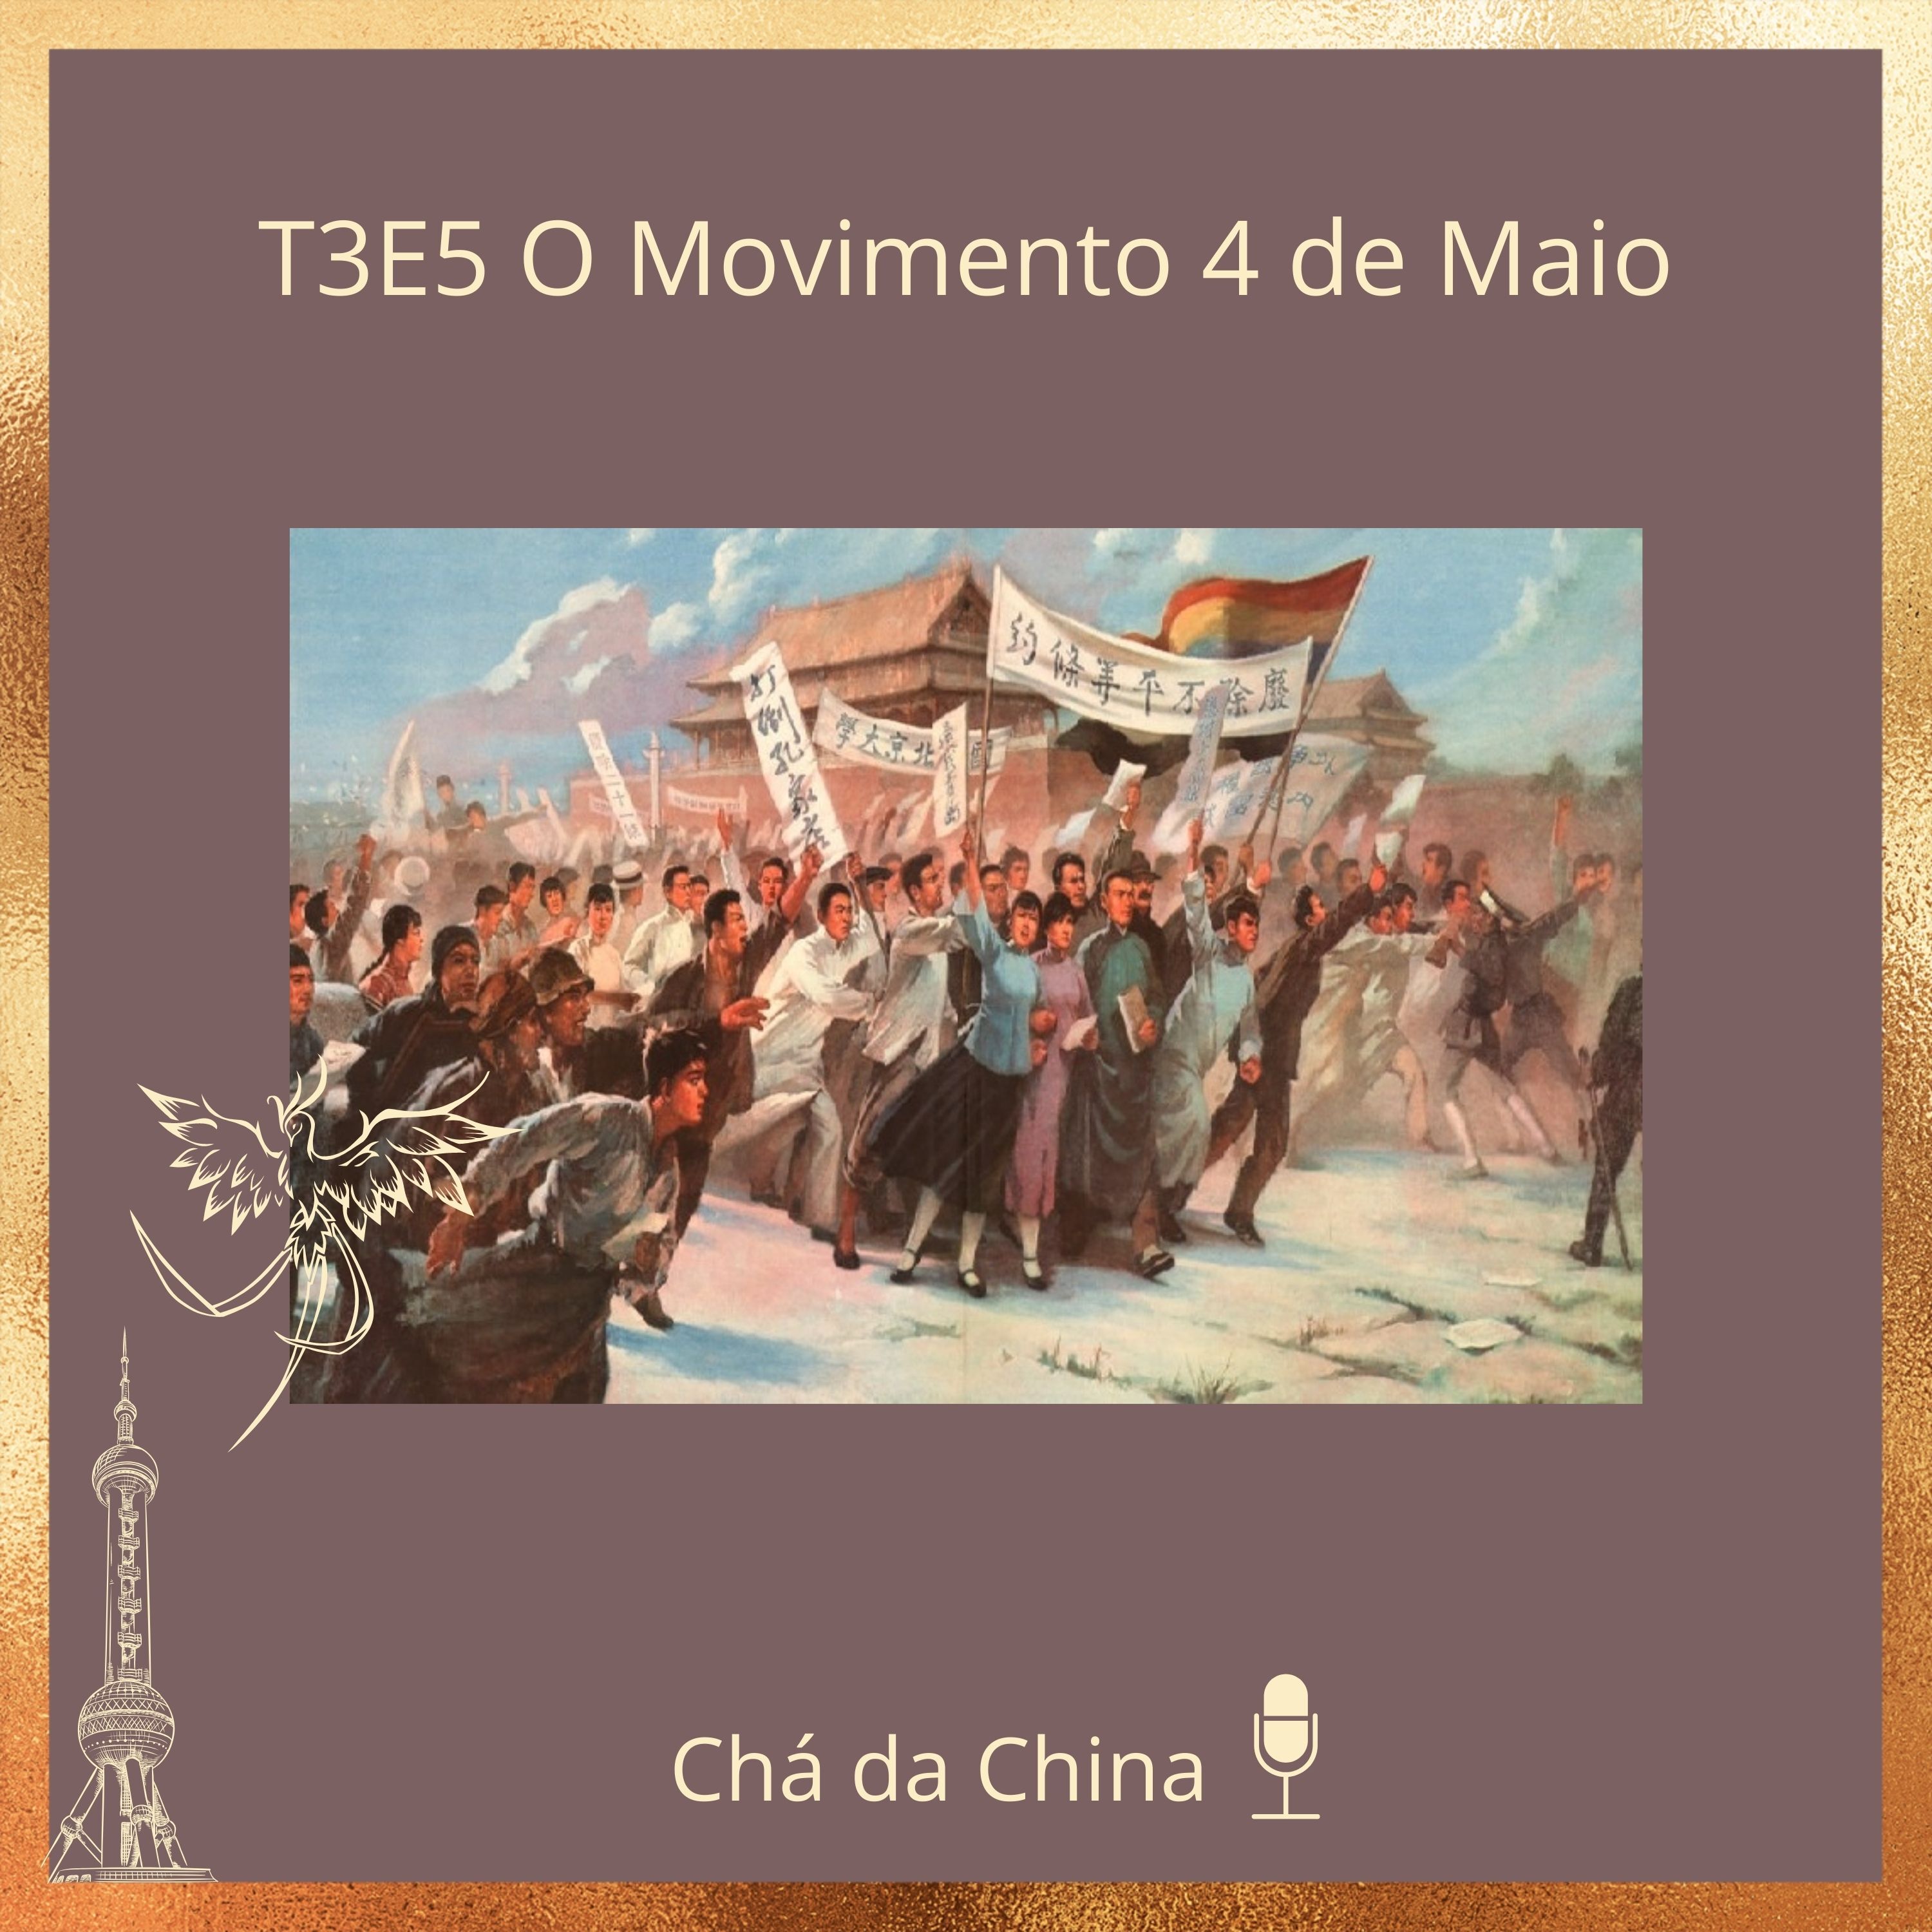 T3E5_O_Movimento_4_de_Maioauwrt.jpg